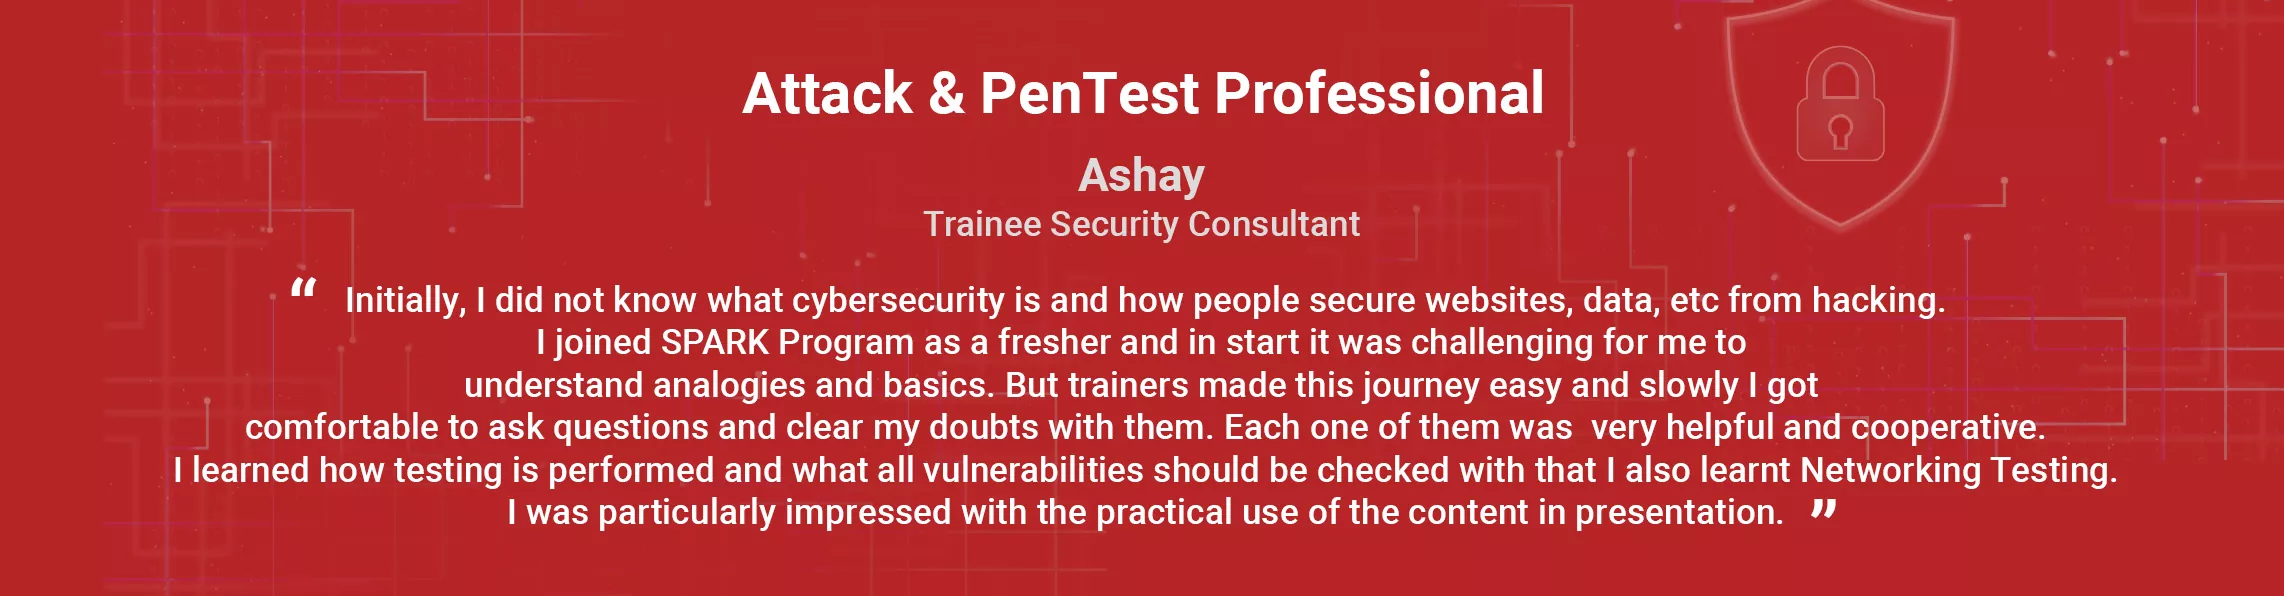 Cyber Security Training Cyber Security Training Ashay Testimonial